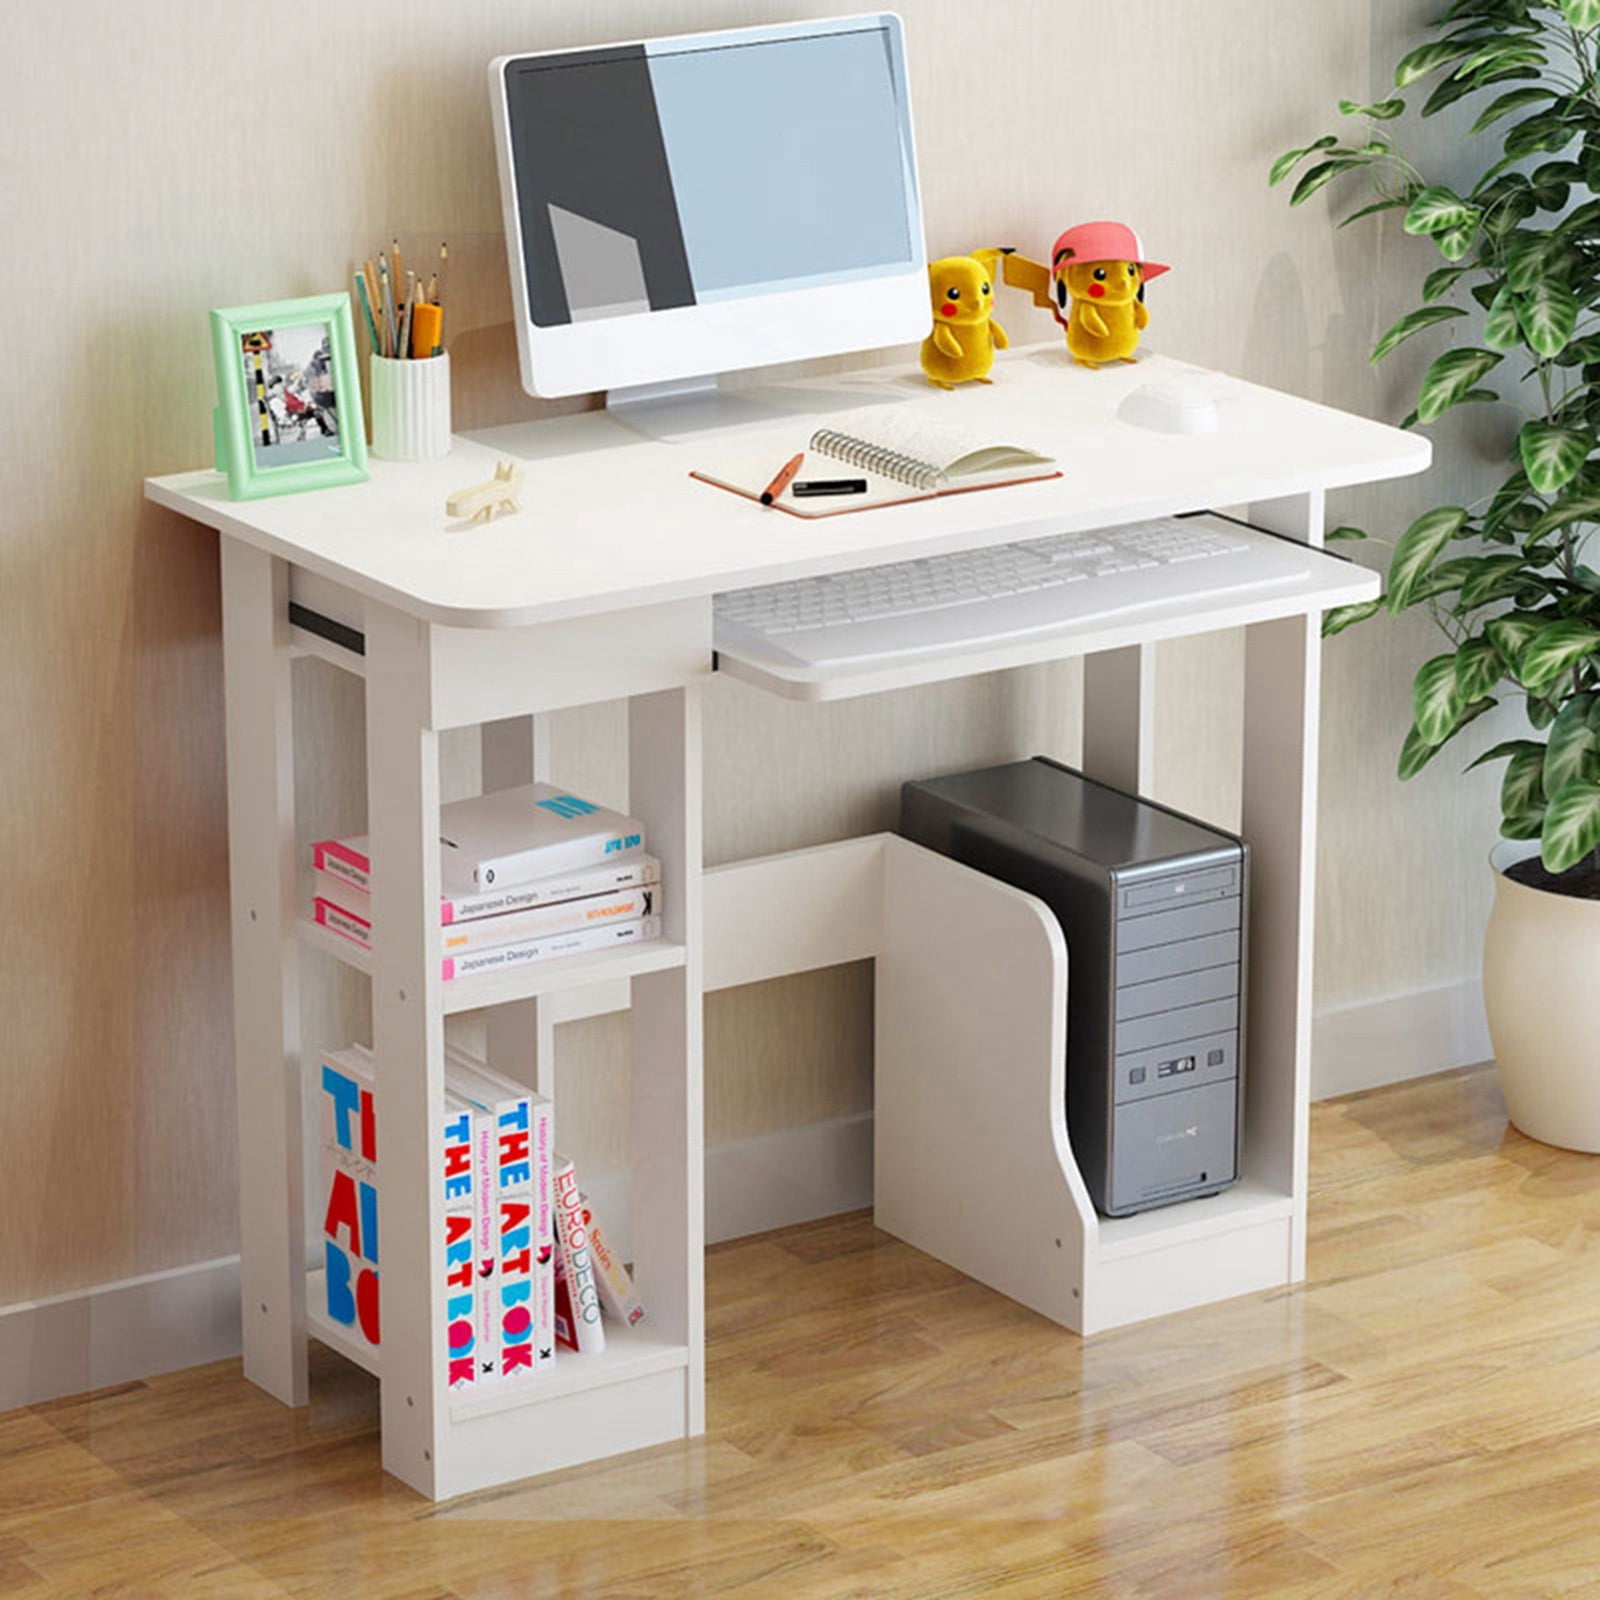 Details about   L-Shaped Computer Desk Corner Desk PC Laptop Table w/2 Tier Shelves Home Office 